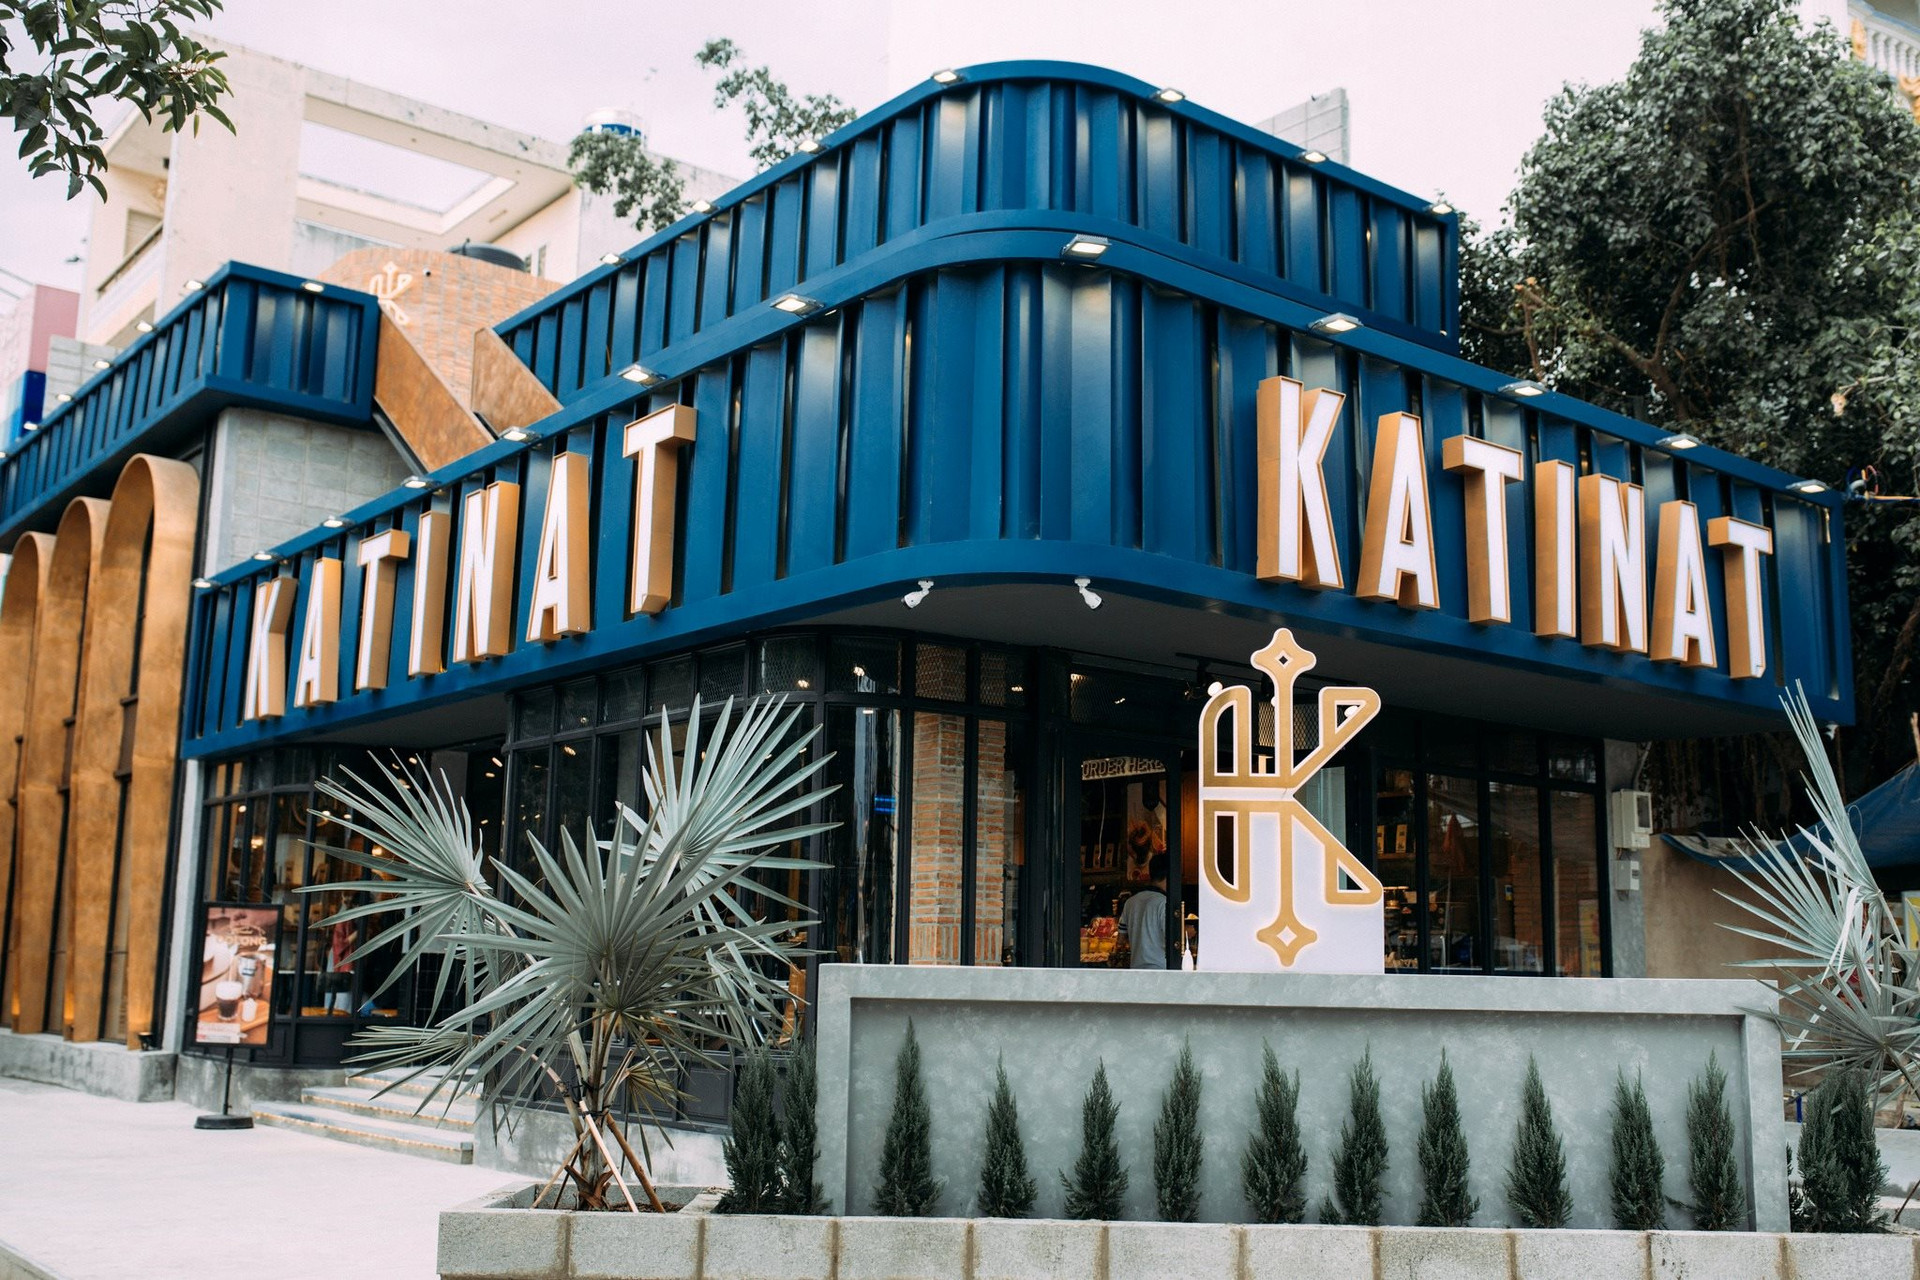 Katinat vượt Starbucks trong top 10 chuỗi cà phê được quan tâm nhất trên MXH Việt Nam, vị trí số 1 không có gì bất ngờ - Ảnh 1.